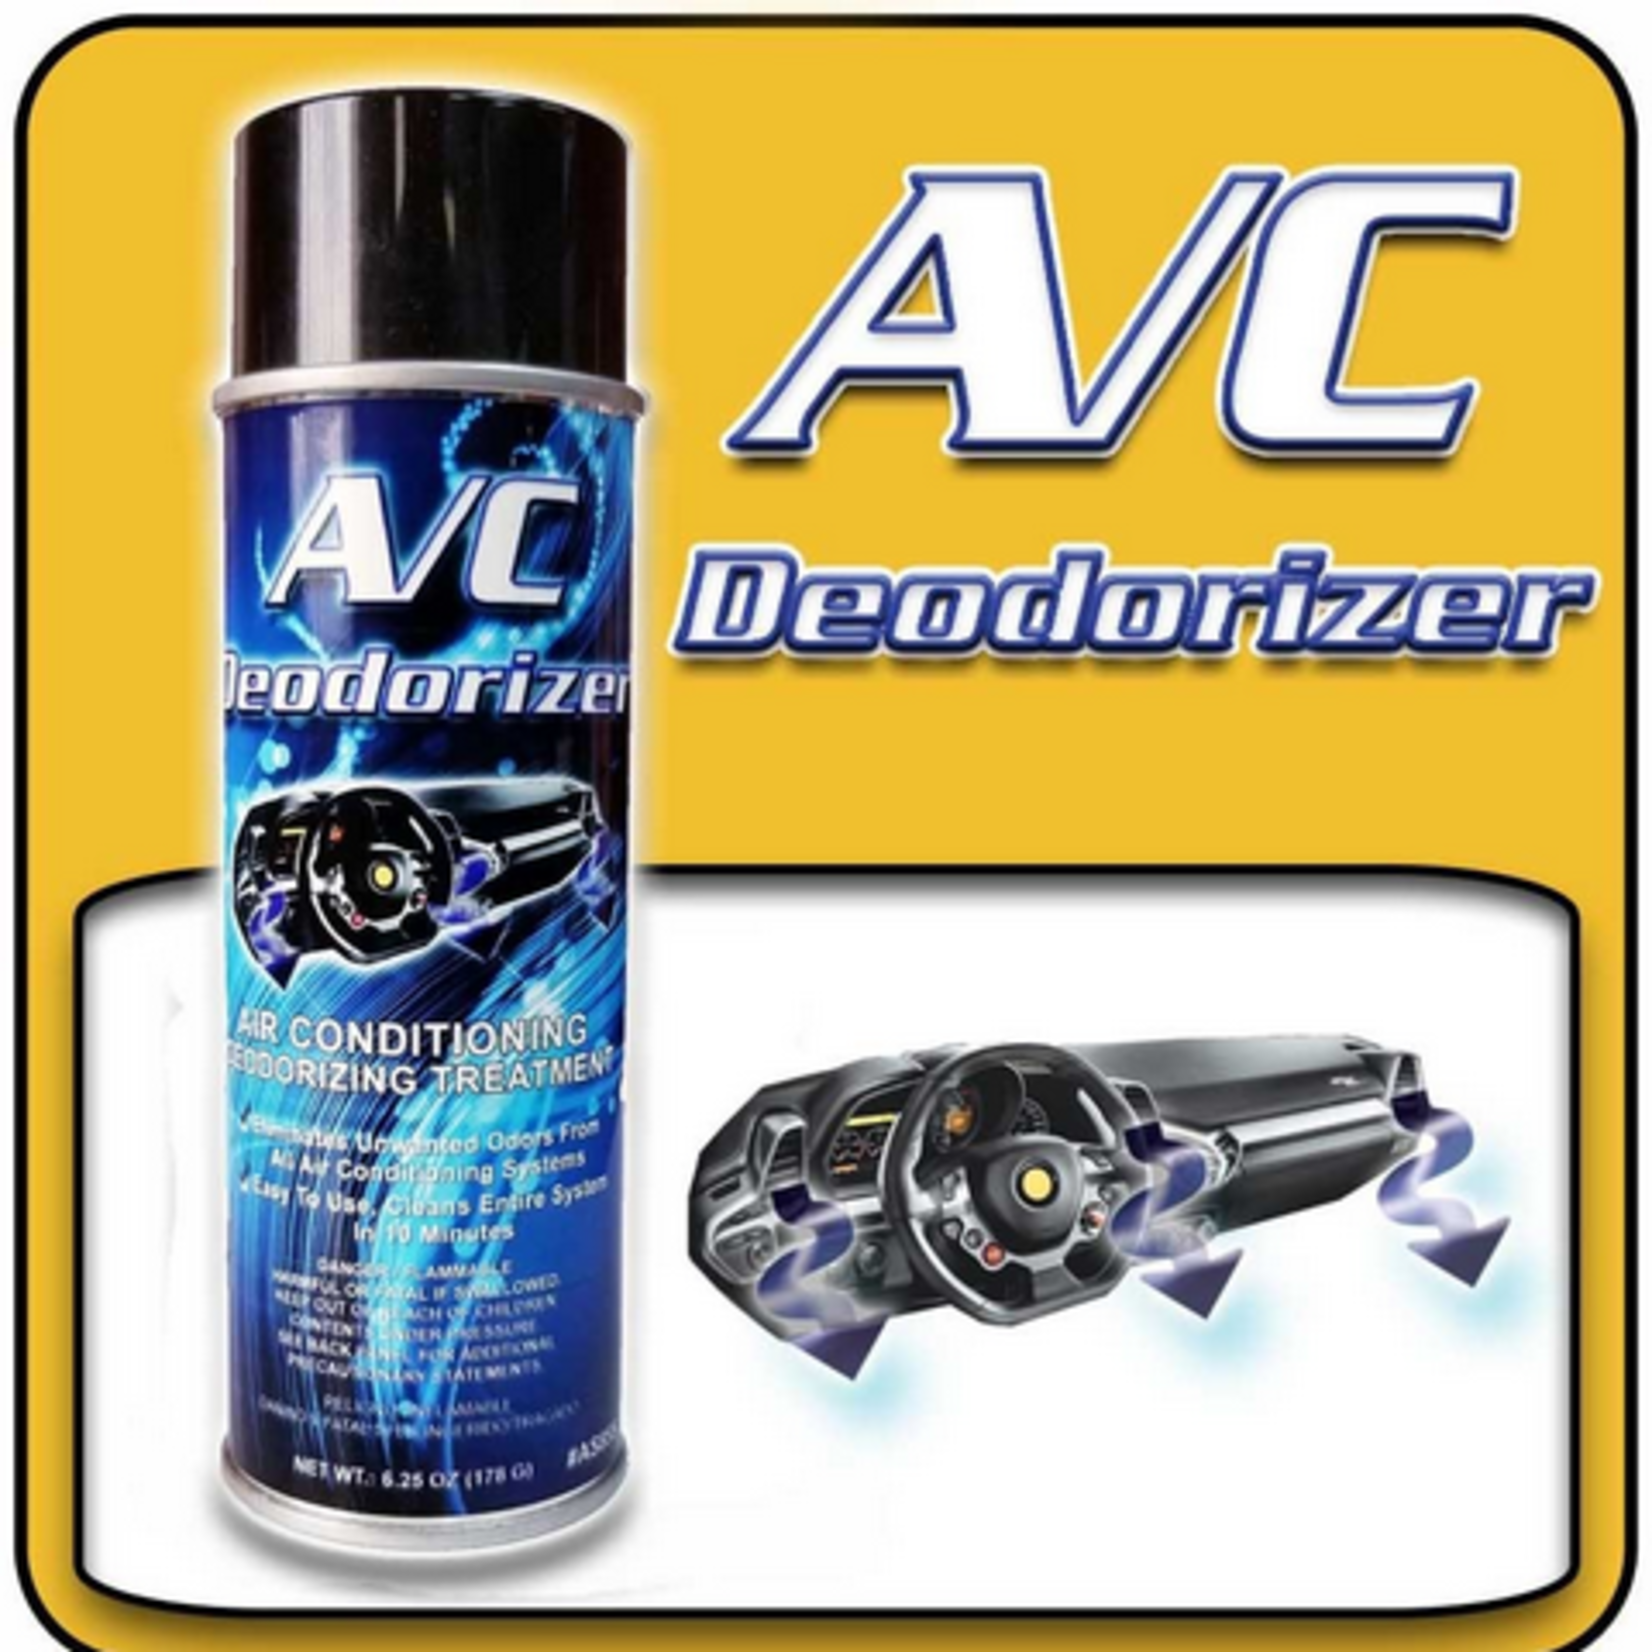 Auto Scents Auto Scents A/C Deodorizer